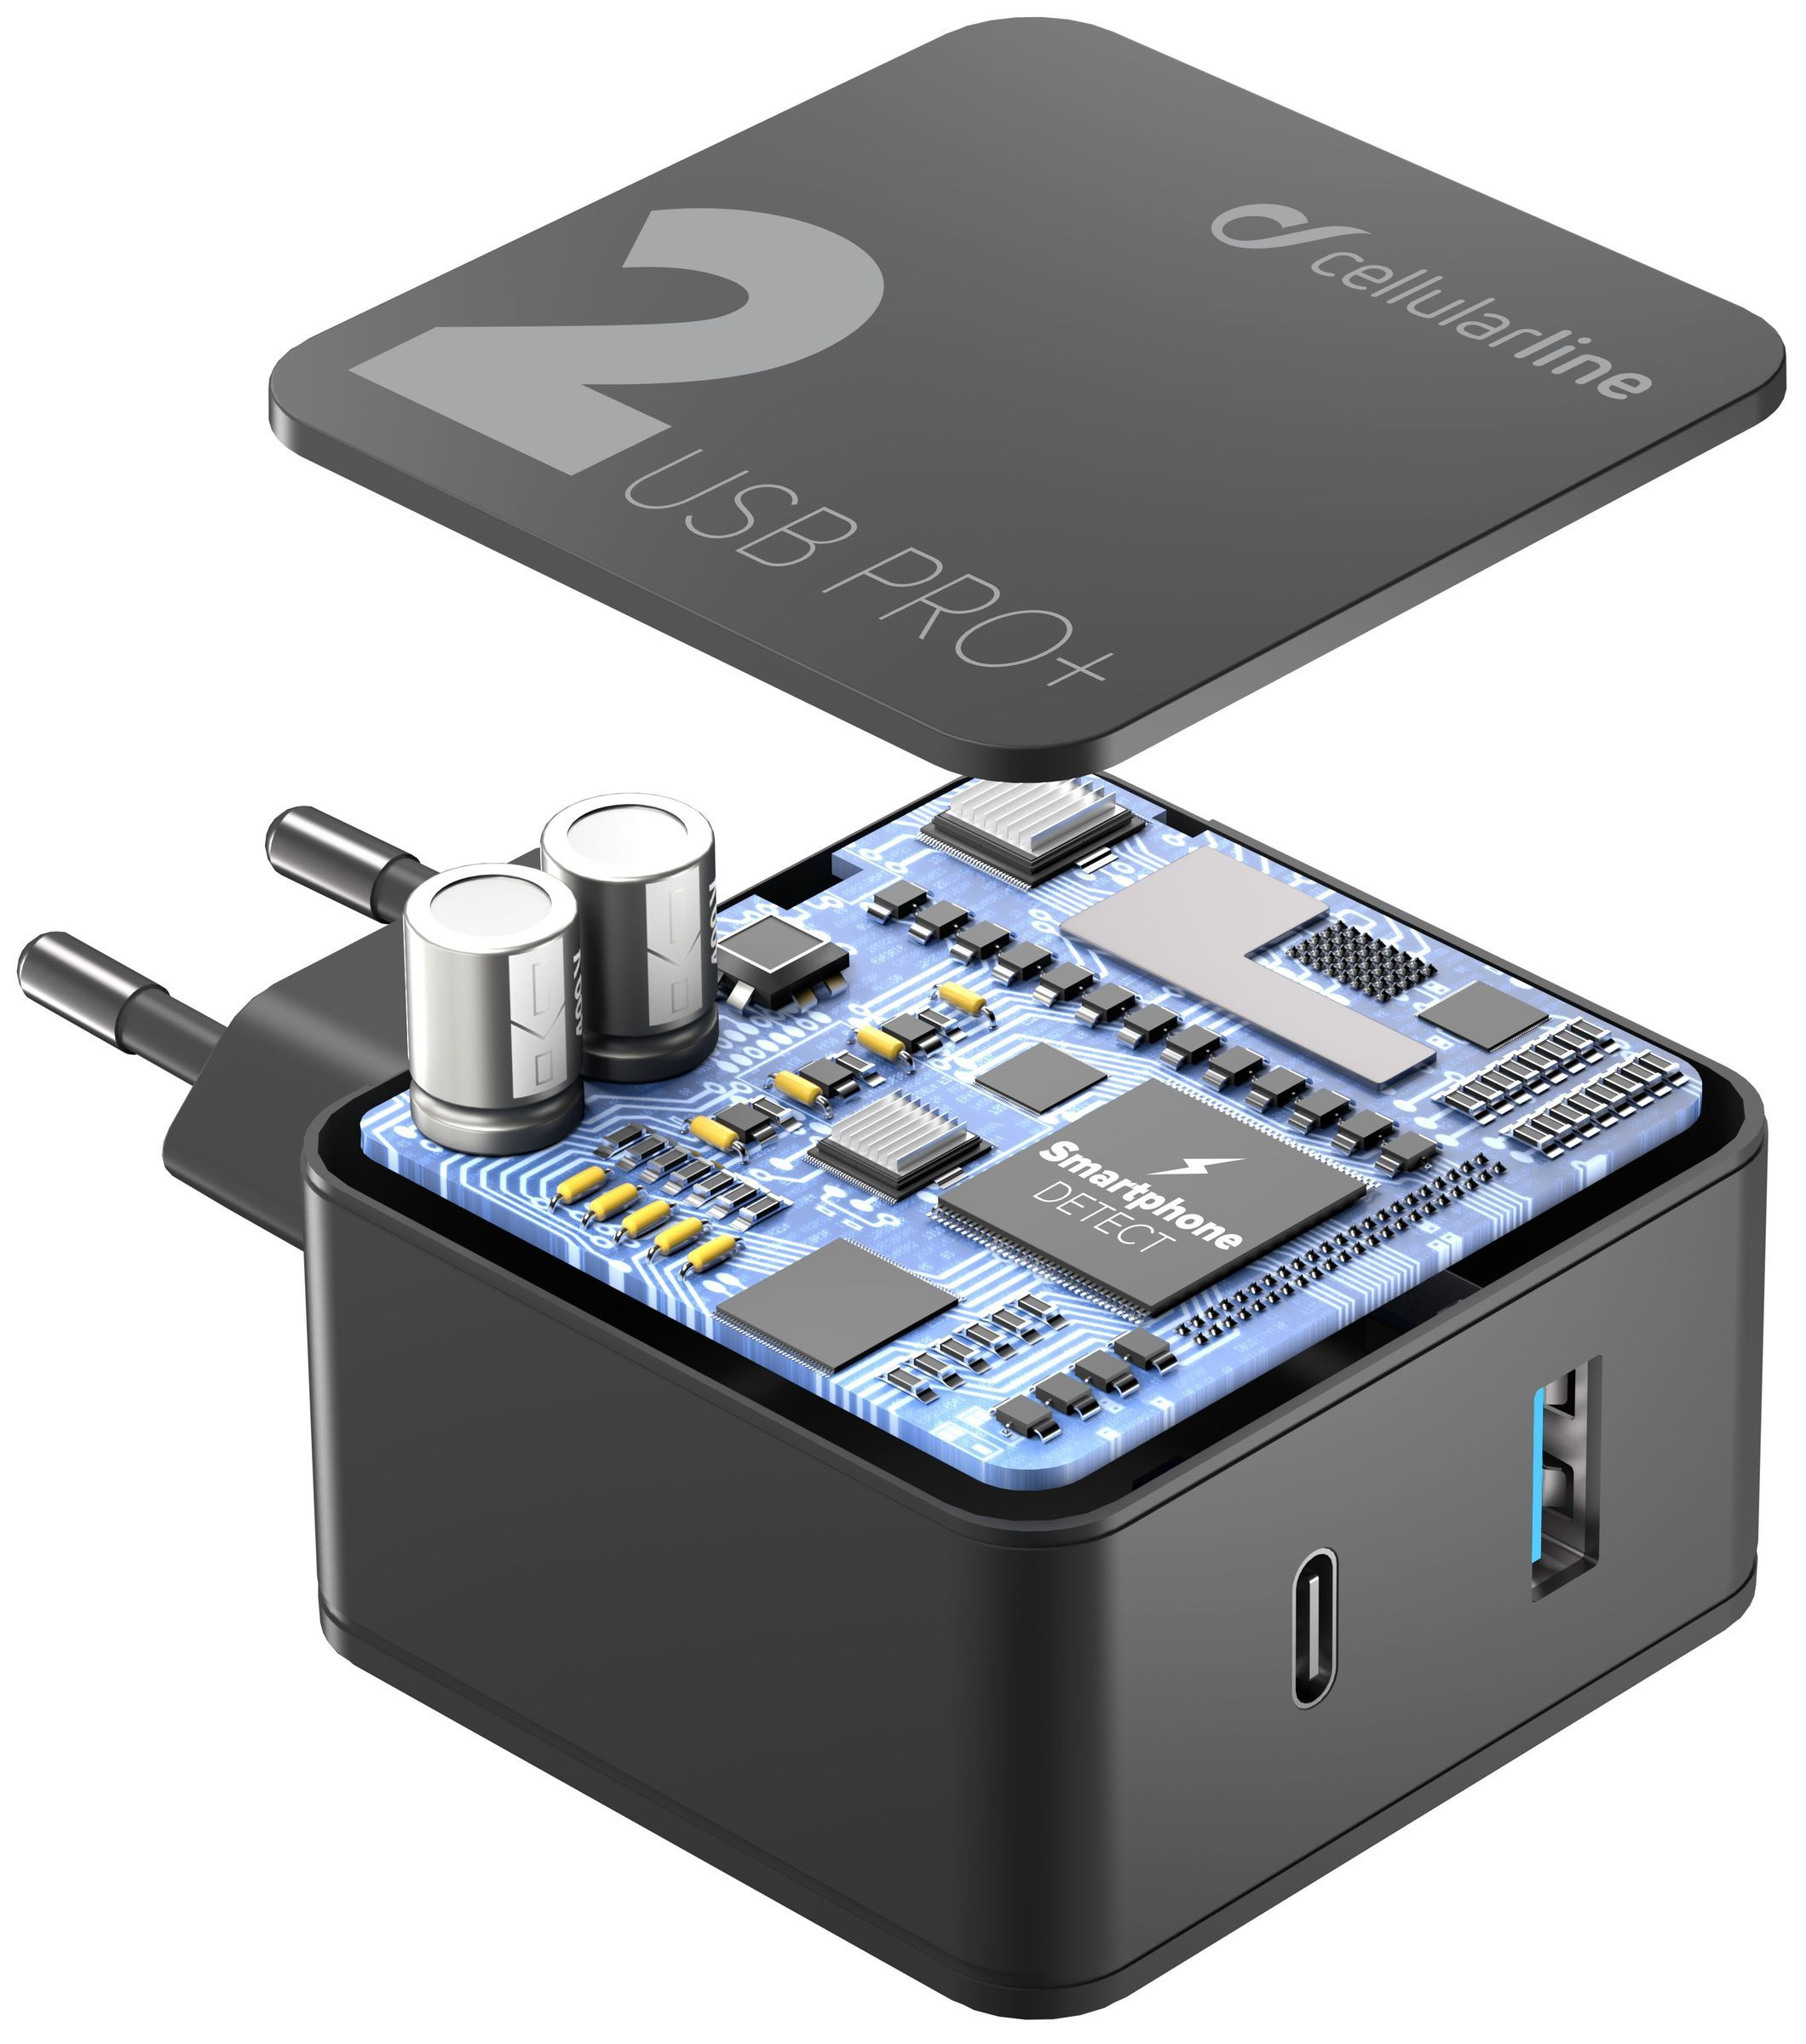 Síťová nabíječka Cellularline Multipower 2 PRO+ s technologií Smartphone Detect, USB-C + USB port, 36W, černá 